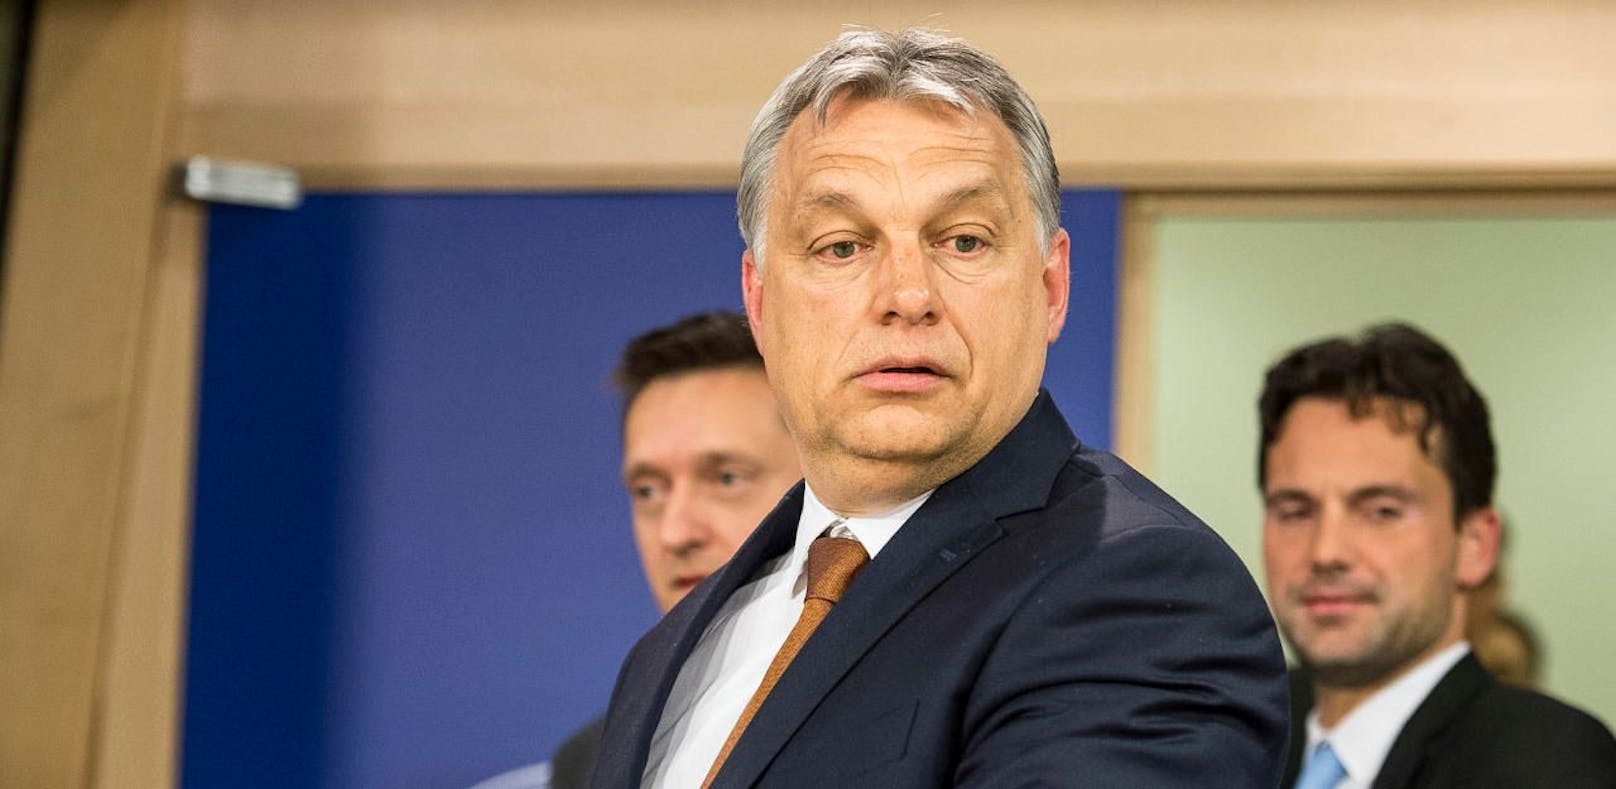 Der ungarische Premierminister Viktor Orban gibt sich bei der Flüchtlingspolitik gern als Hardliner. Tatsächlich nahm Ungarn &quot;heimlich&quot; 1.300 Flüchtlinge auf.